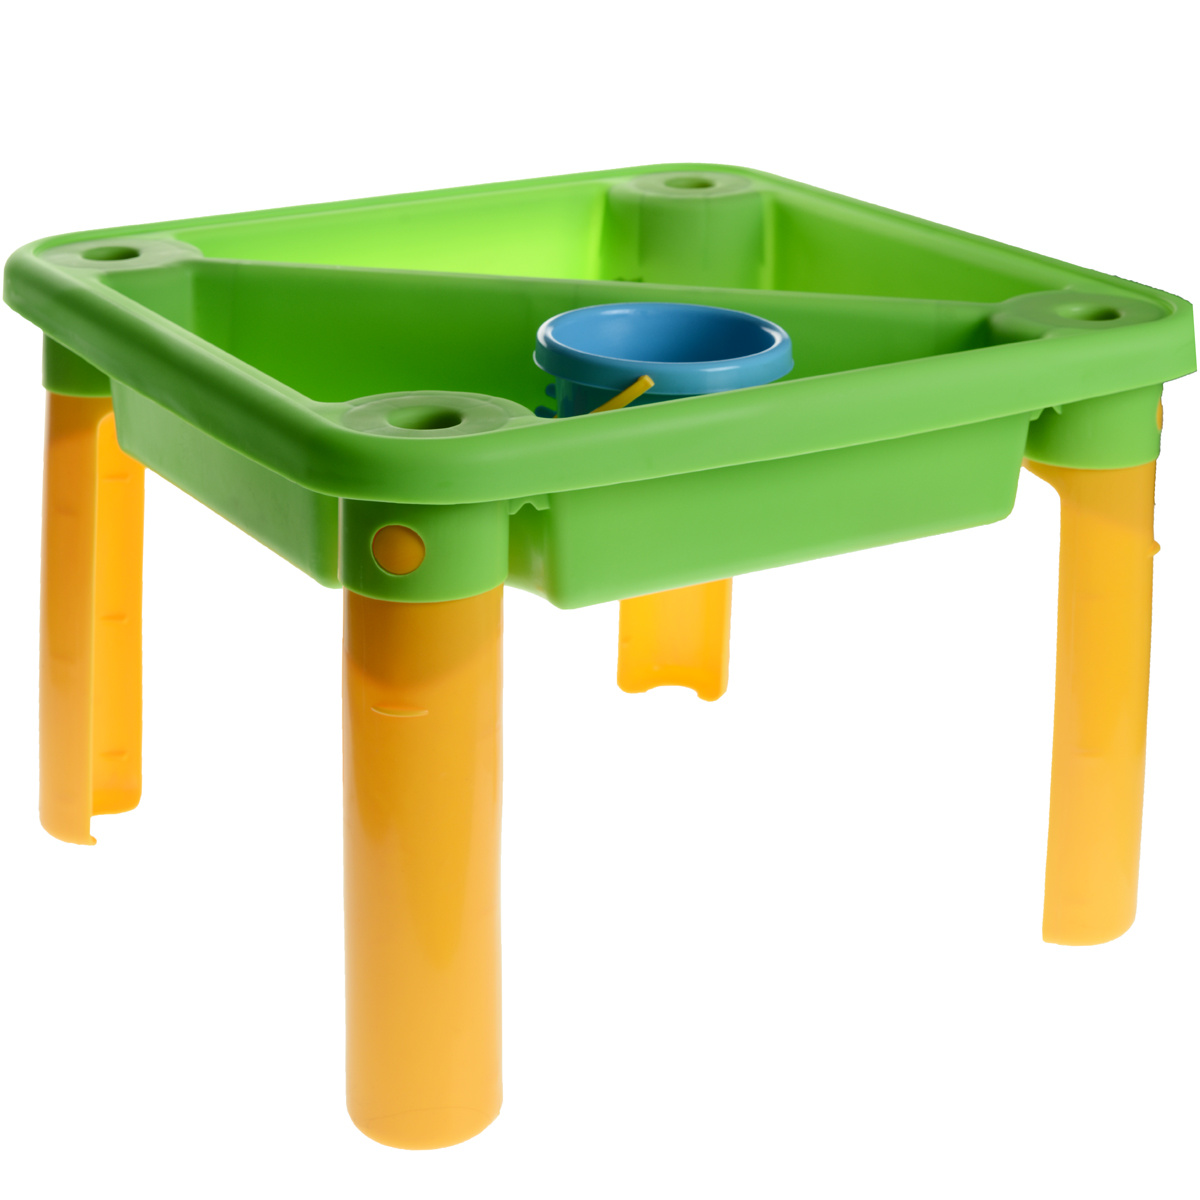 WPL kt2001-00c стол для игр с водой и песком l89см x w63см x h44-58см, прозрачный